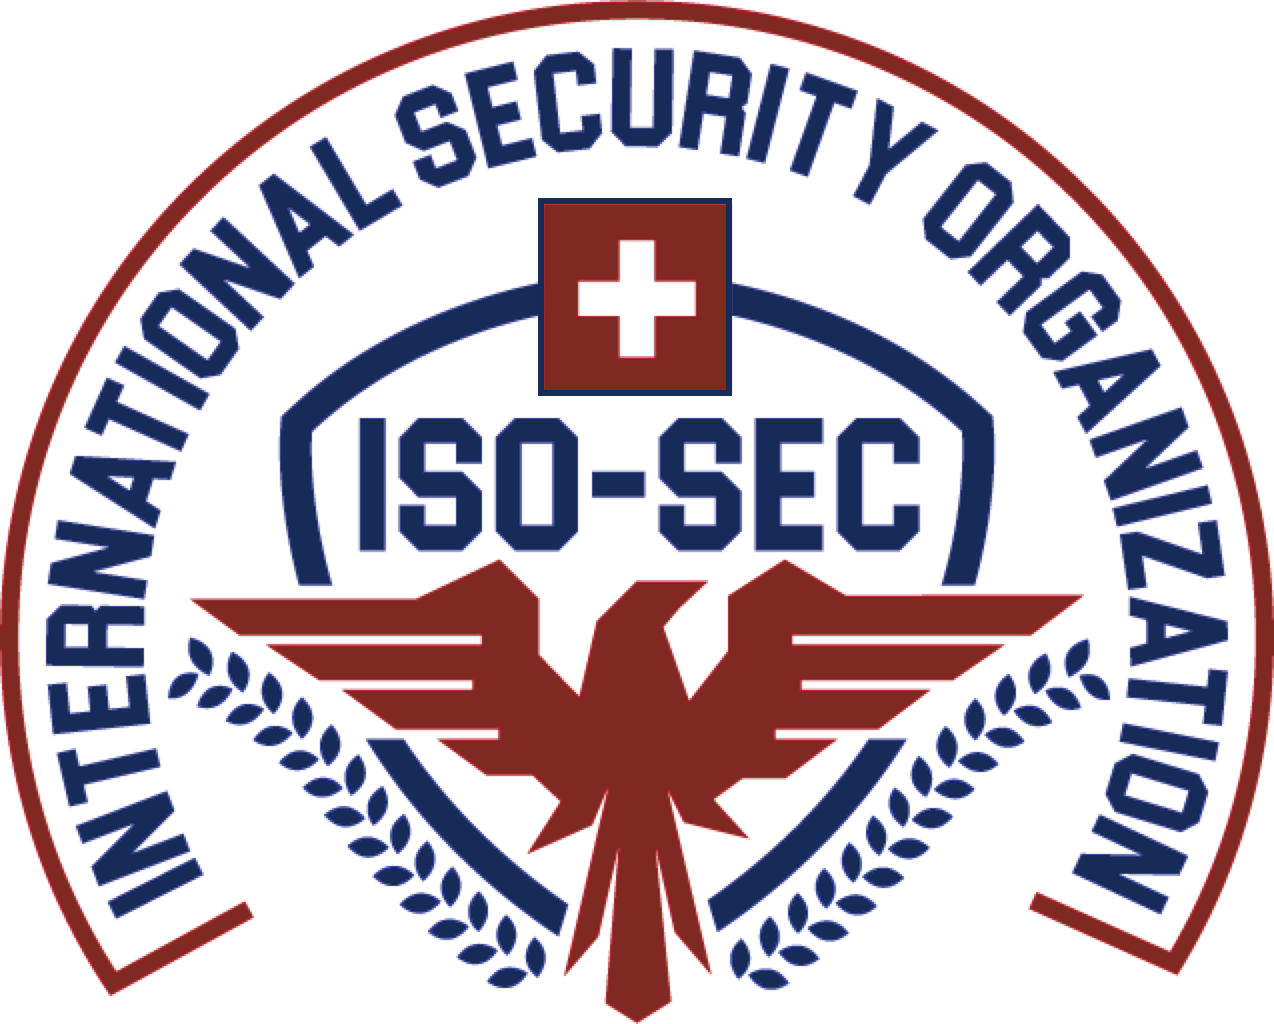 iSO-SEC, Switzerland